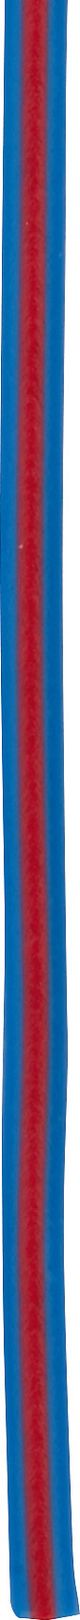 CÂBLE, 1 mètre 0.75qmm bleu-rouge (câble bleu avec ligne rouge)